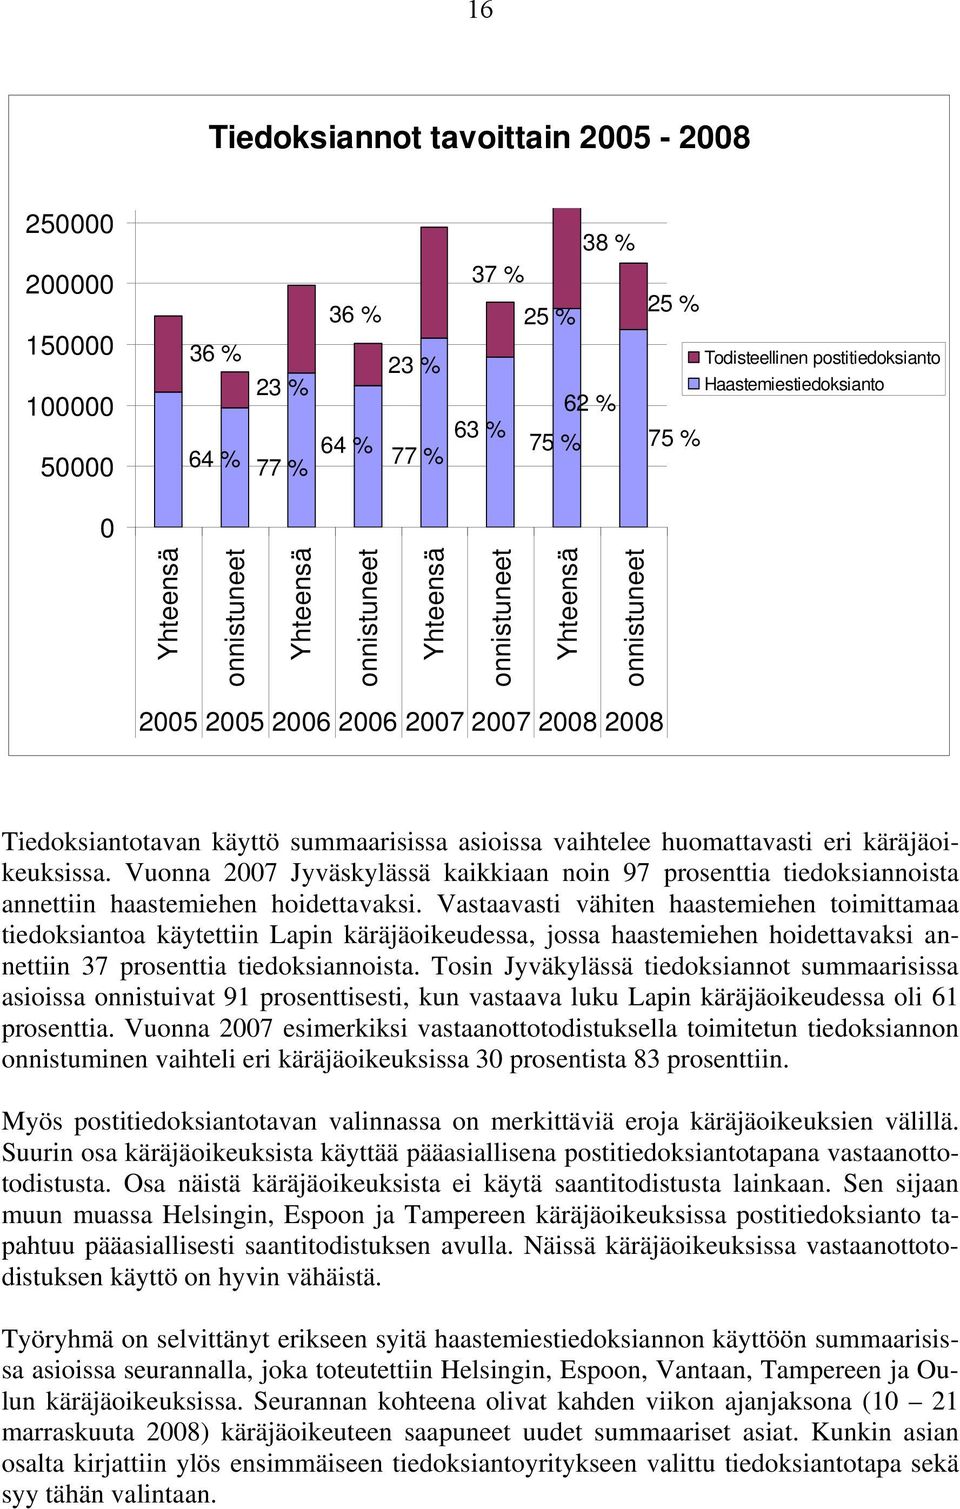 vaihtelee huomattavasti eri käräjäoikeuksissa. Vuonna 2007 Jyväskylässä kaikkiaan noin 97 prosenttia tiedoksiannoista annettiin haastemiehen hoidettavaksi.